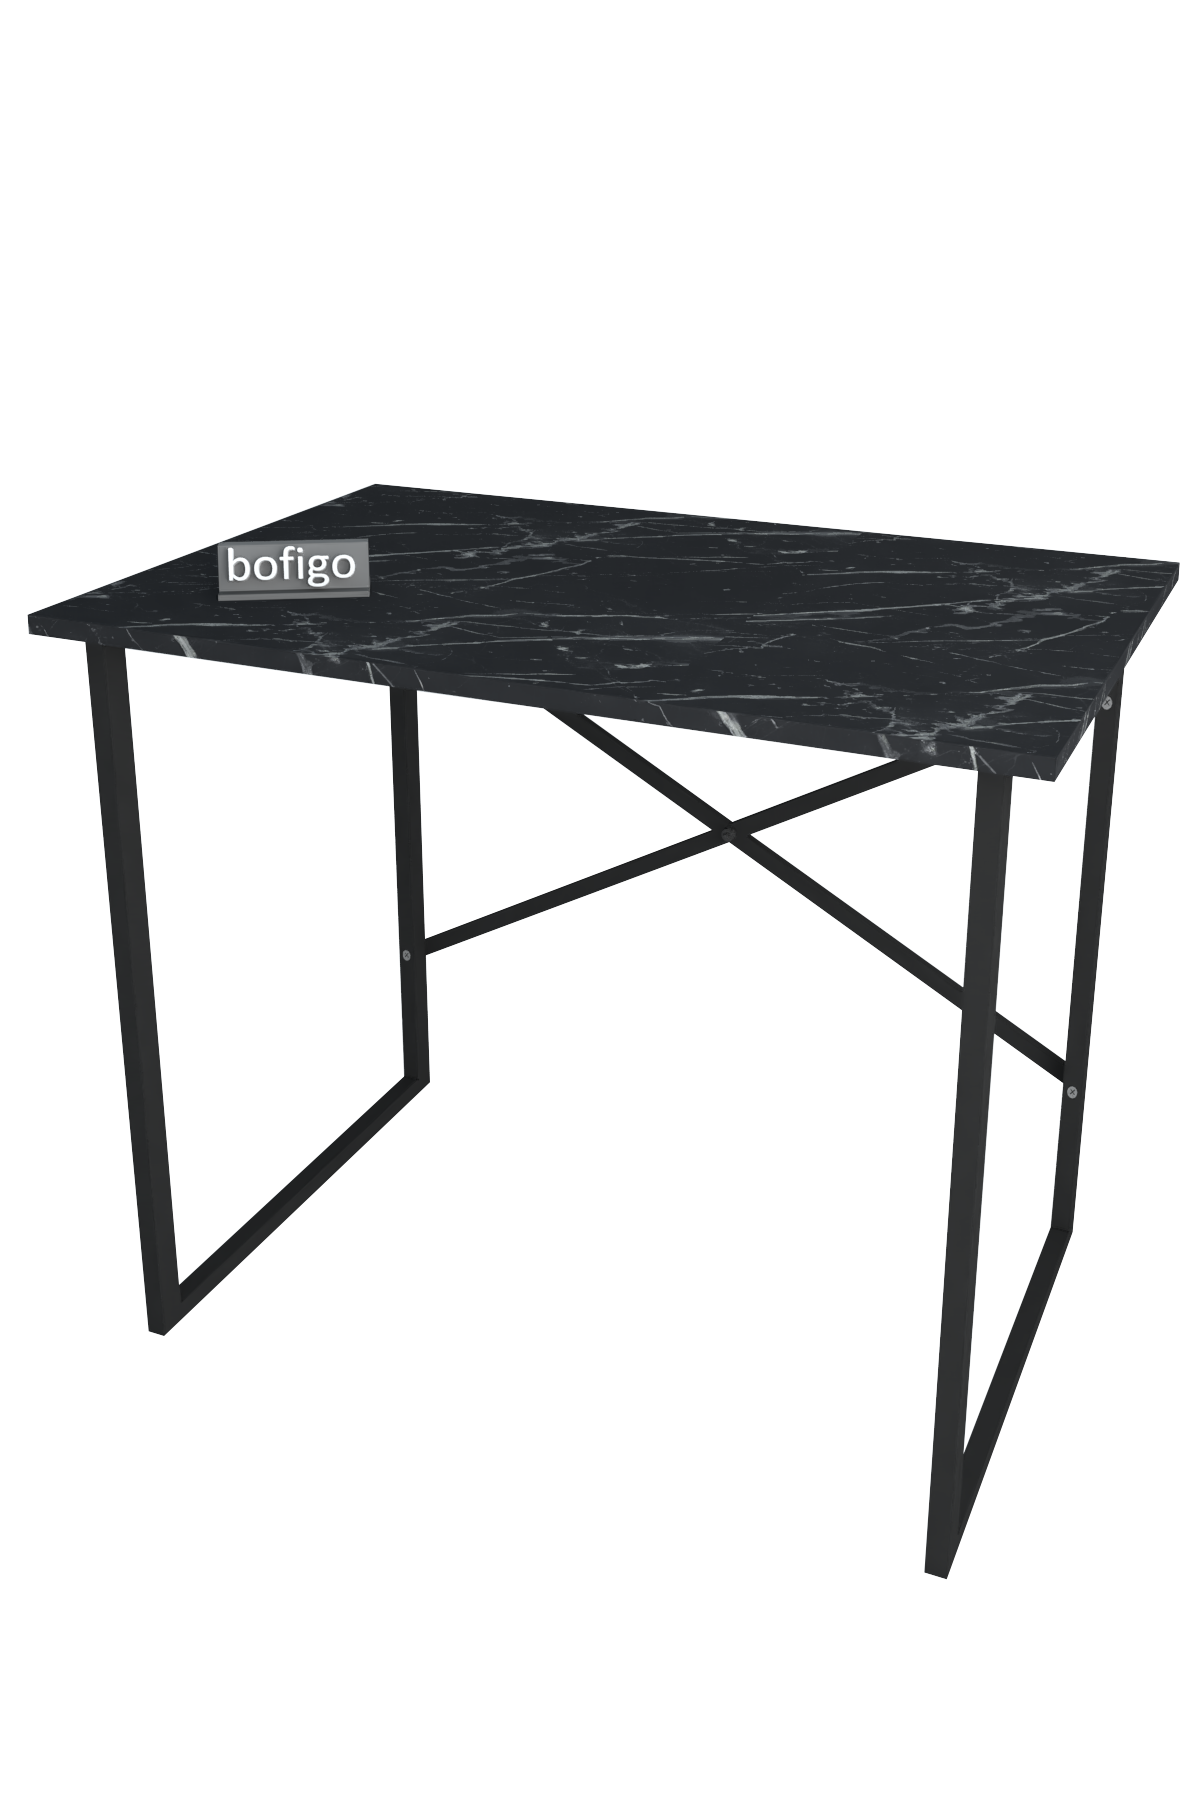 Bofigo Desk 60x90 cm Bendir